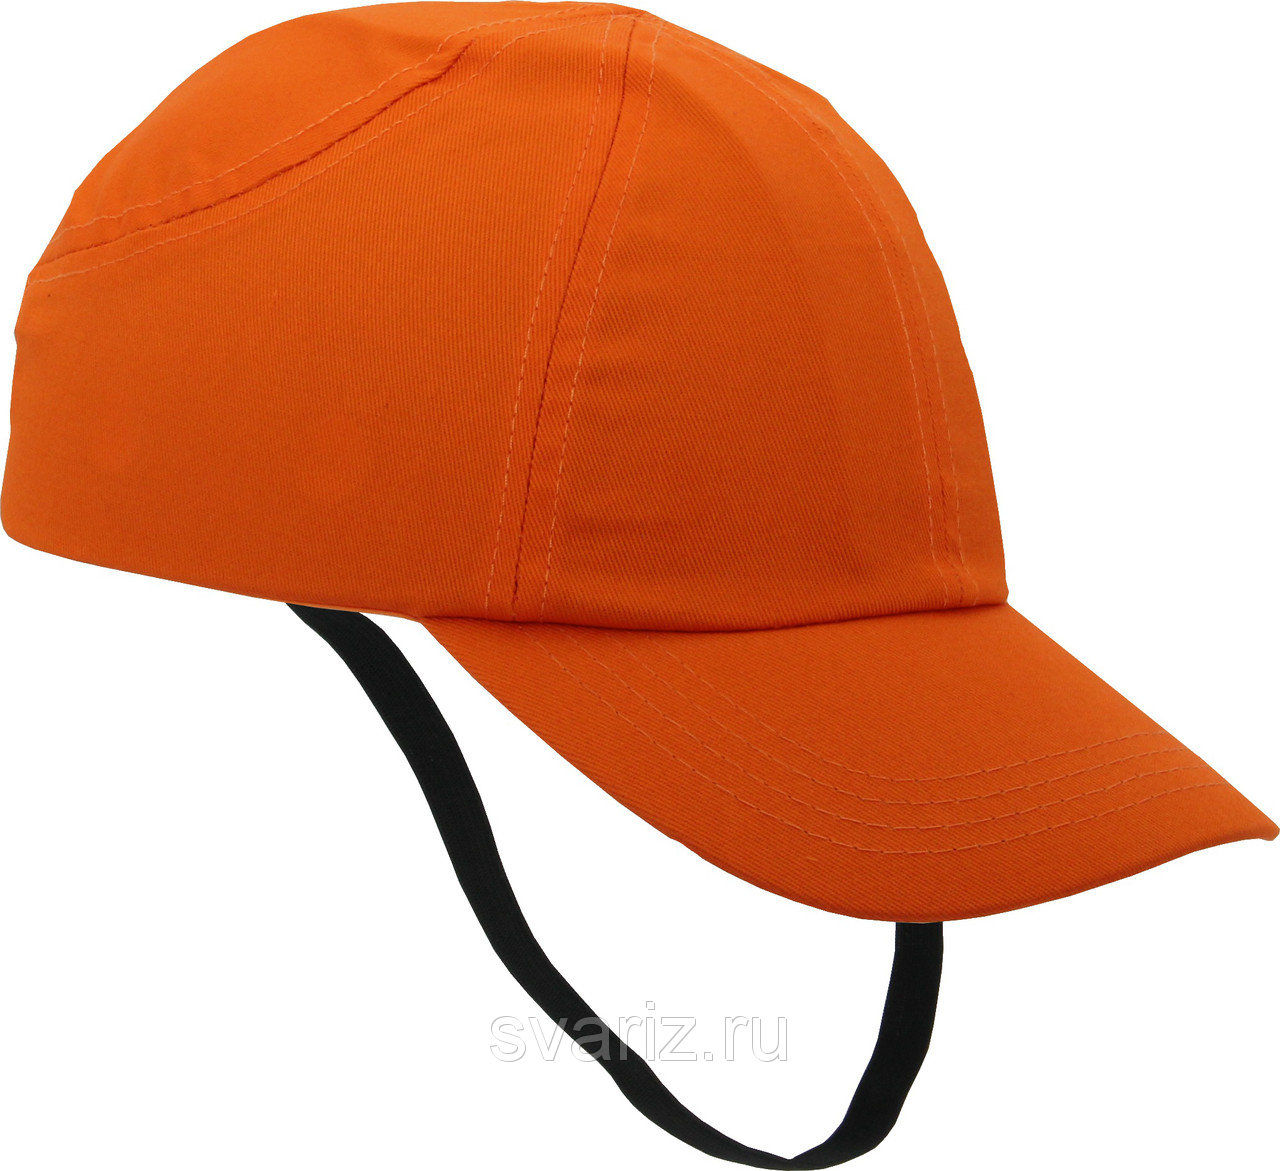 Каскетка защитная RZ Favorit CAP оранжевая